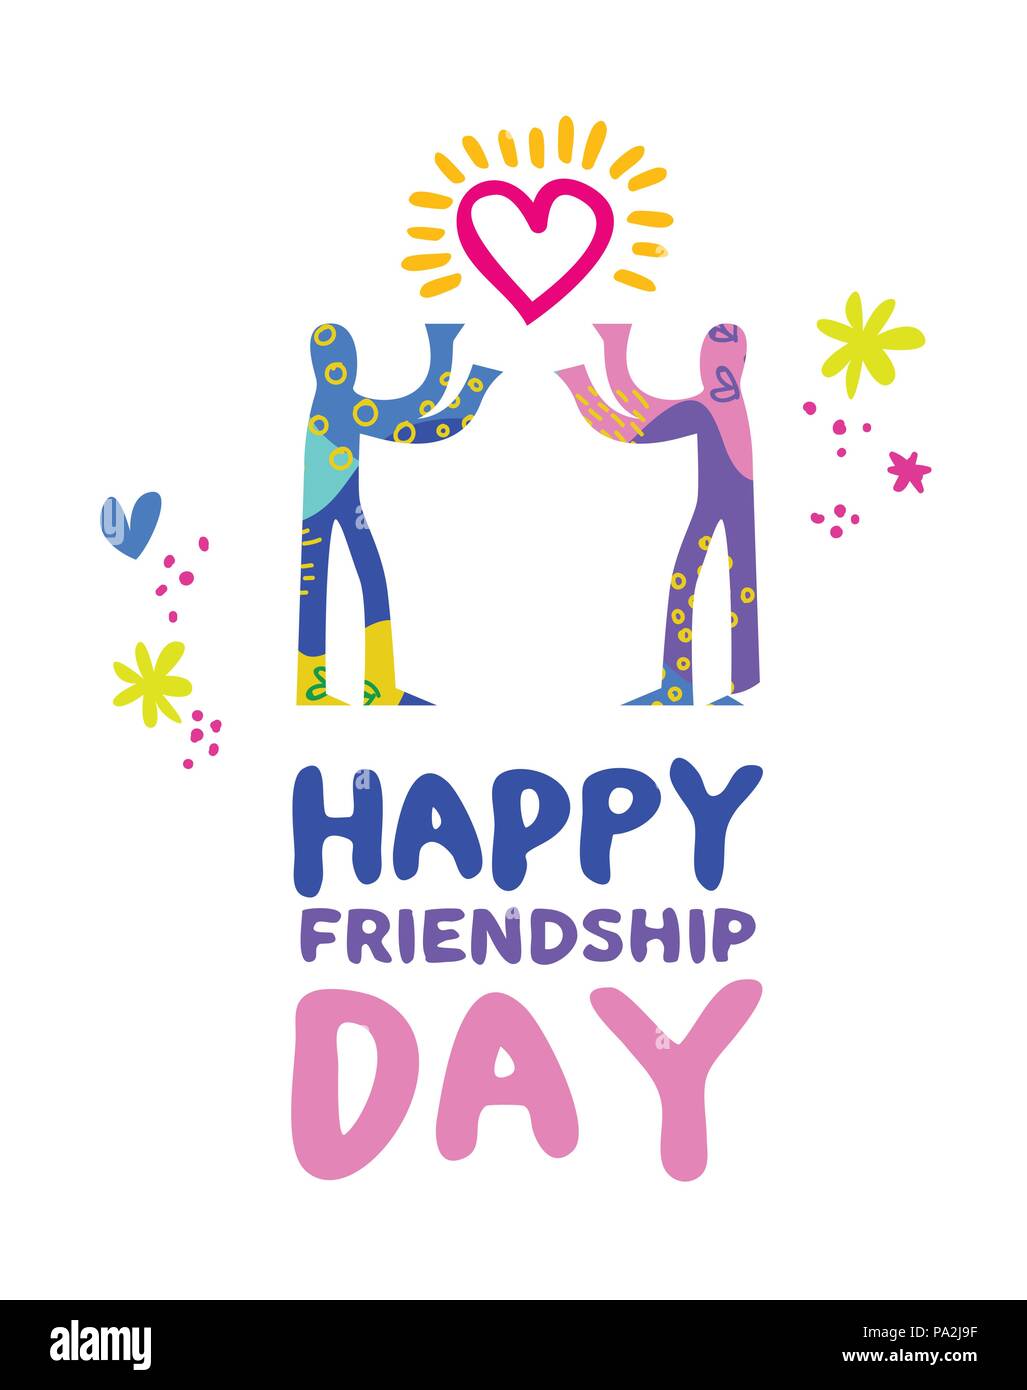 La journée de l'amitié heureuse, illustration de carte de vœux d'amis dessinés à la main, l'amour dans le partage de l'art abstrait coloré de style. Vecteur EPS10. Illustration de Vecteur